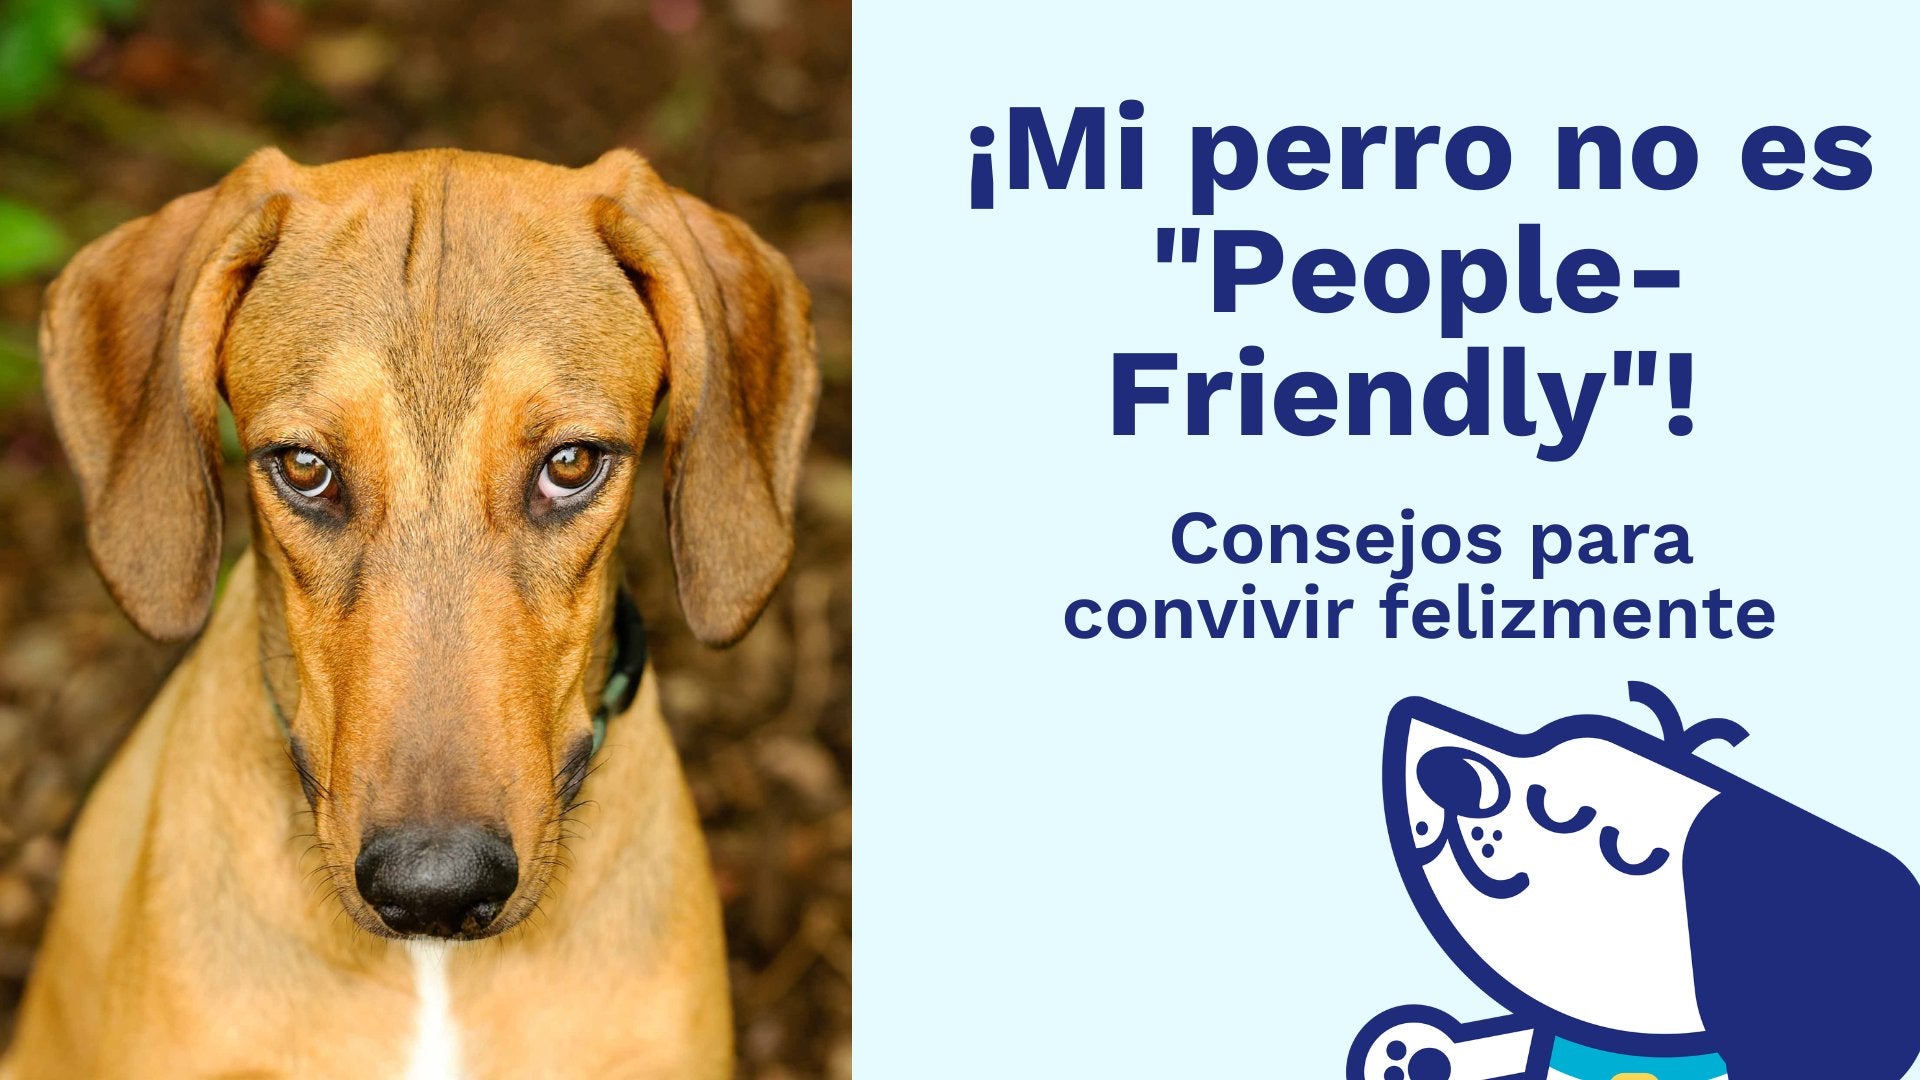 ¡Mi perro no es "People-Friendly"! Consejos para Convivir Felizmente